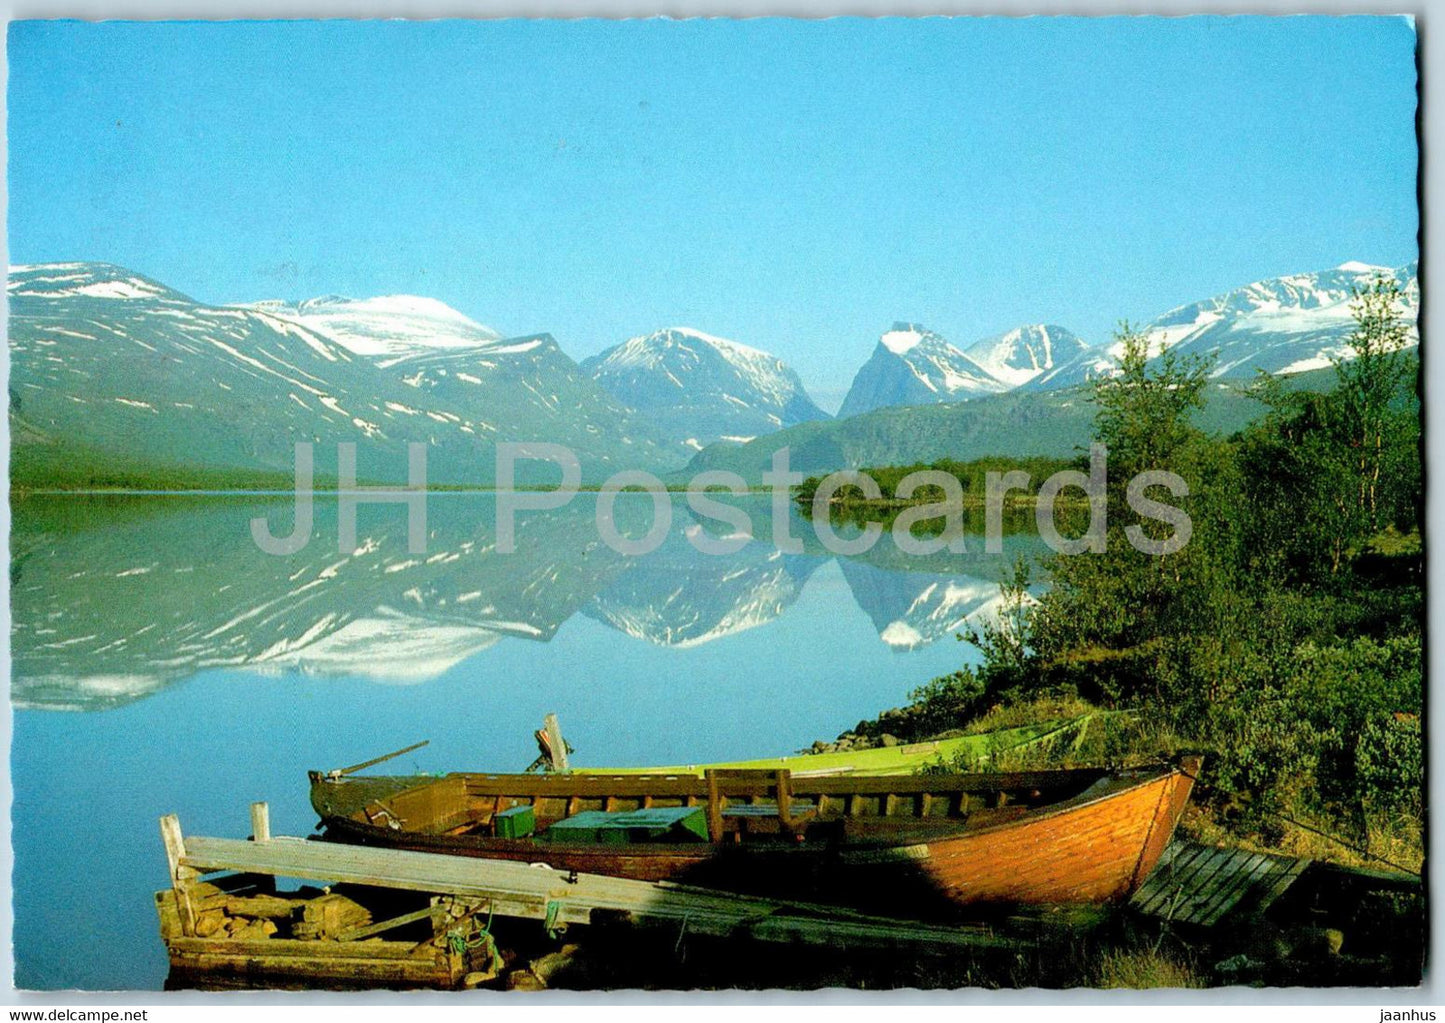 Kebnekaisemassivet fran Ladtjojaure - boat - 1991 - Sweden - used - JH Postcards